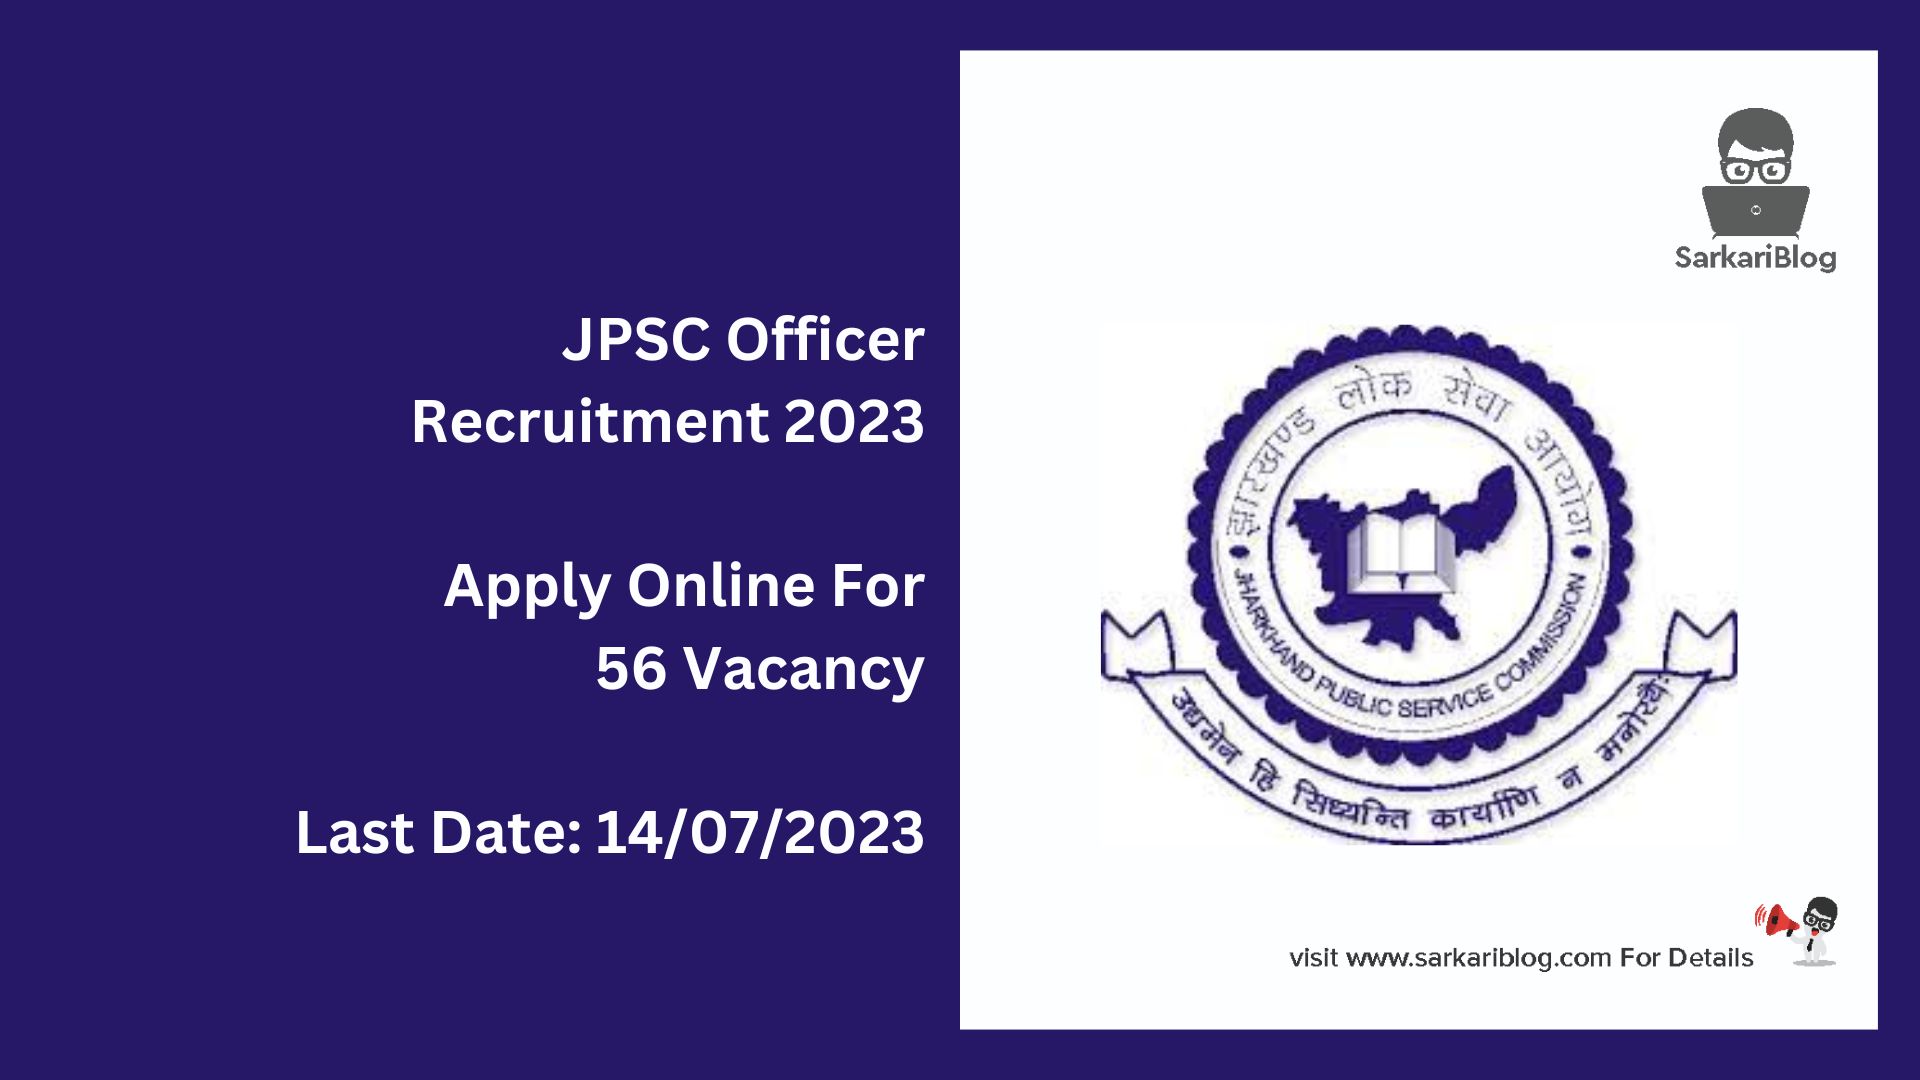 JPSC Officer Recruitment 2023